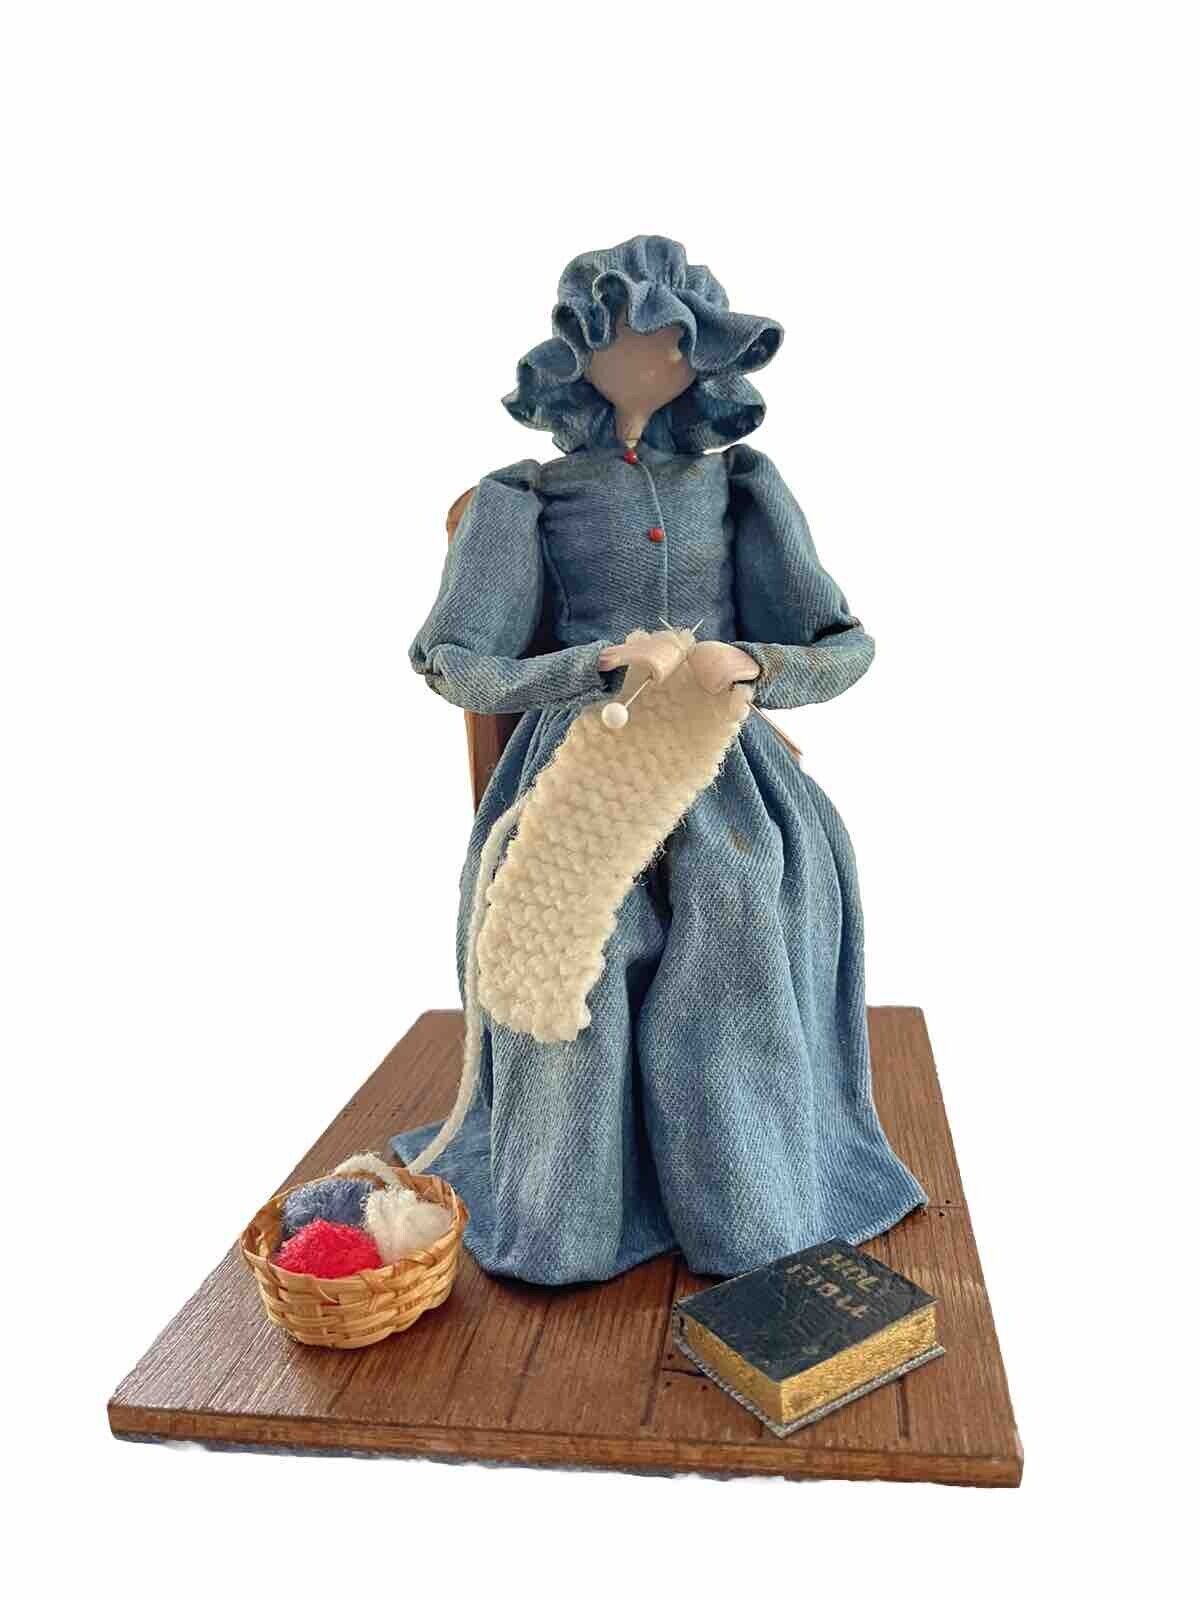 VTG 1984 The Pioneer Spirit Woman & Cradle  Figurine by Dianne & Carl Buettner